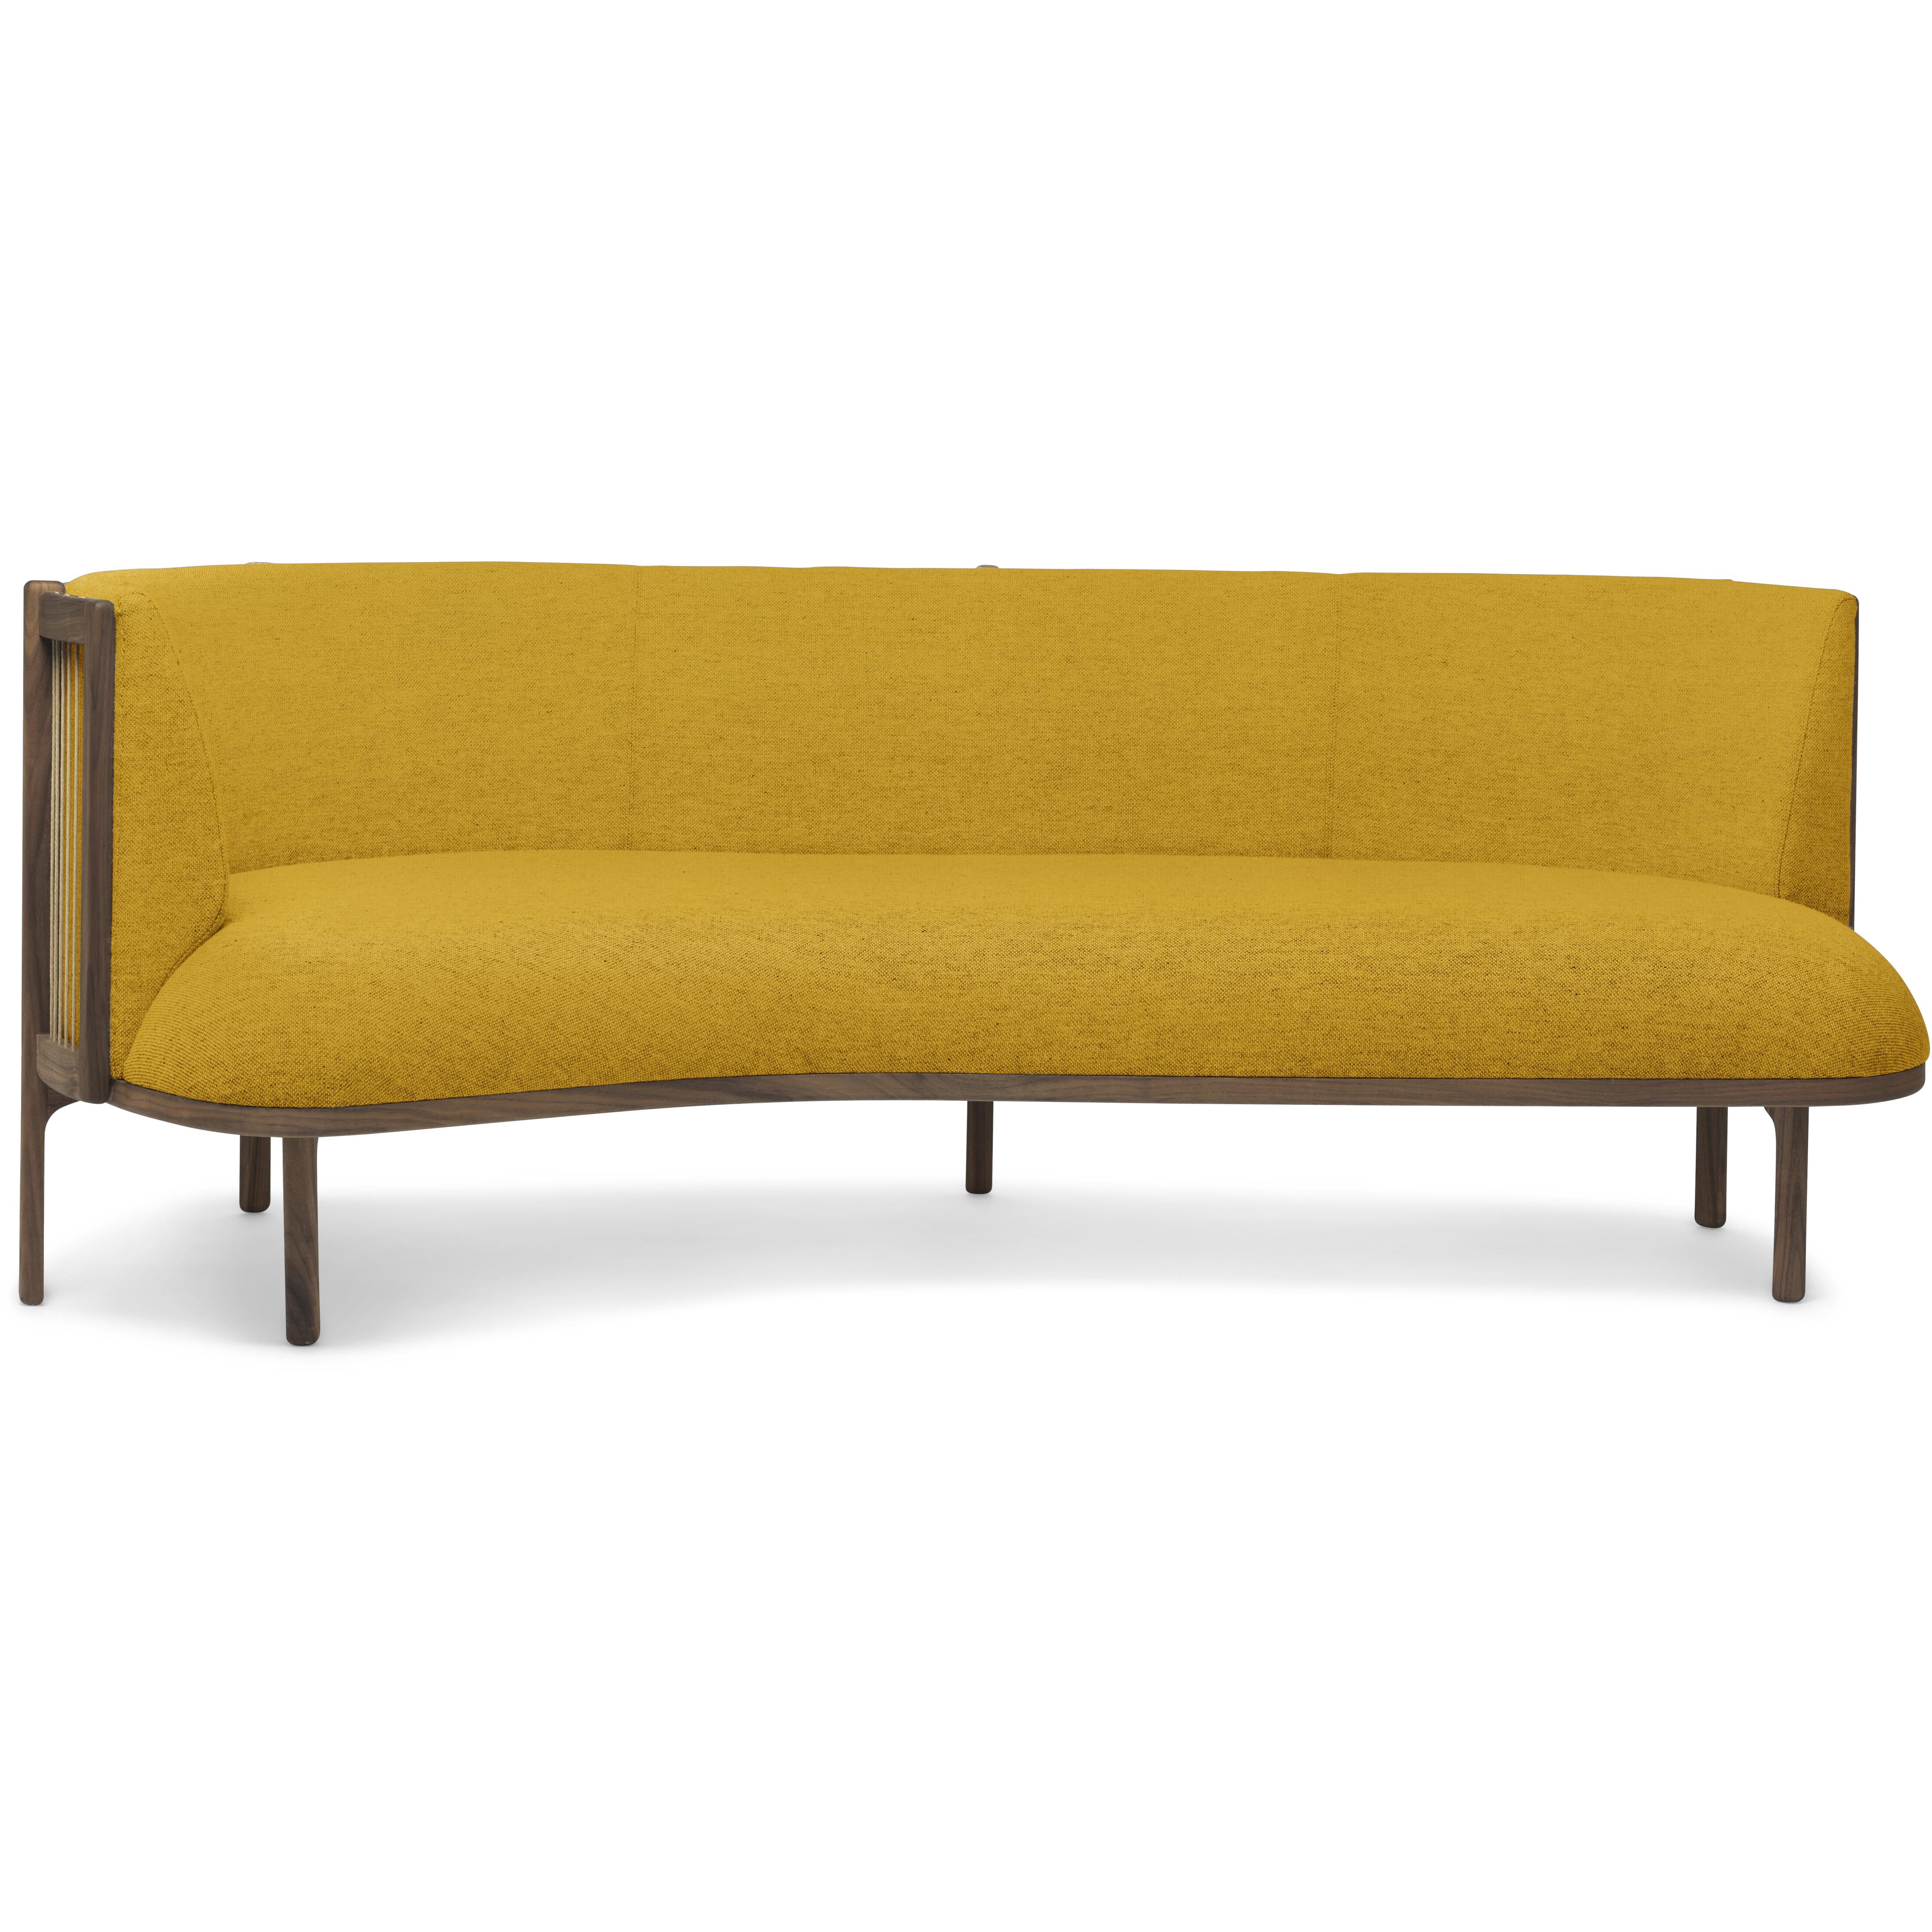 Carl Hansen RF1903 L Sofa latéralement 3 Seater Huile de noyer gauche / Hallingdal 457 Tissu, jaune / brun naturel